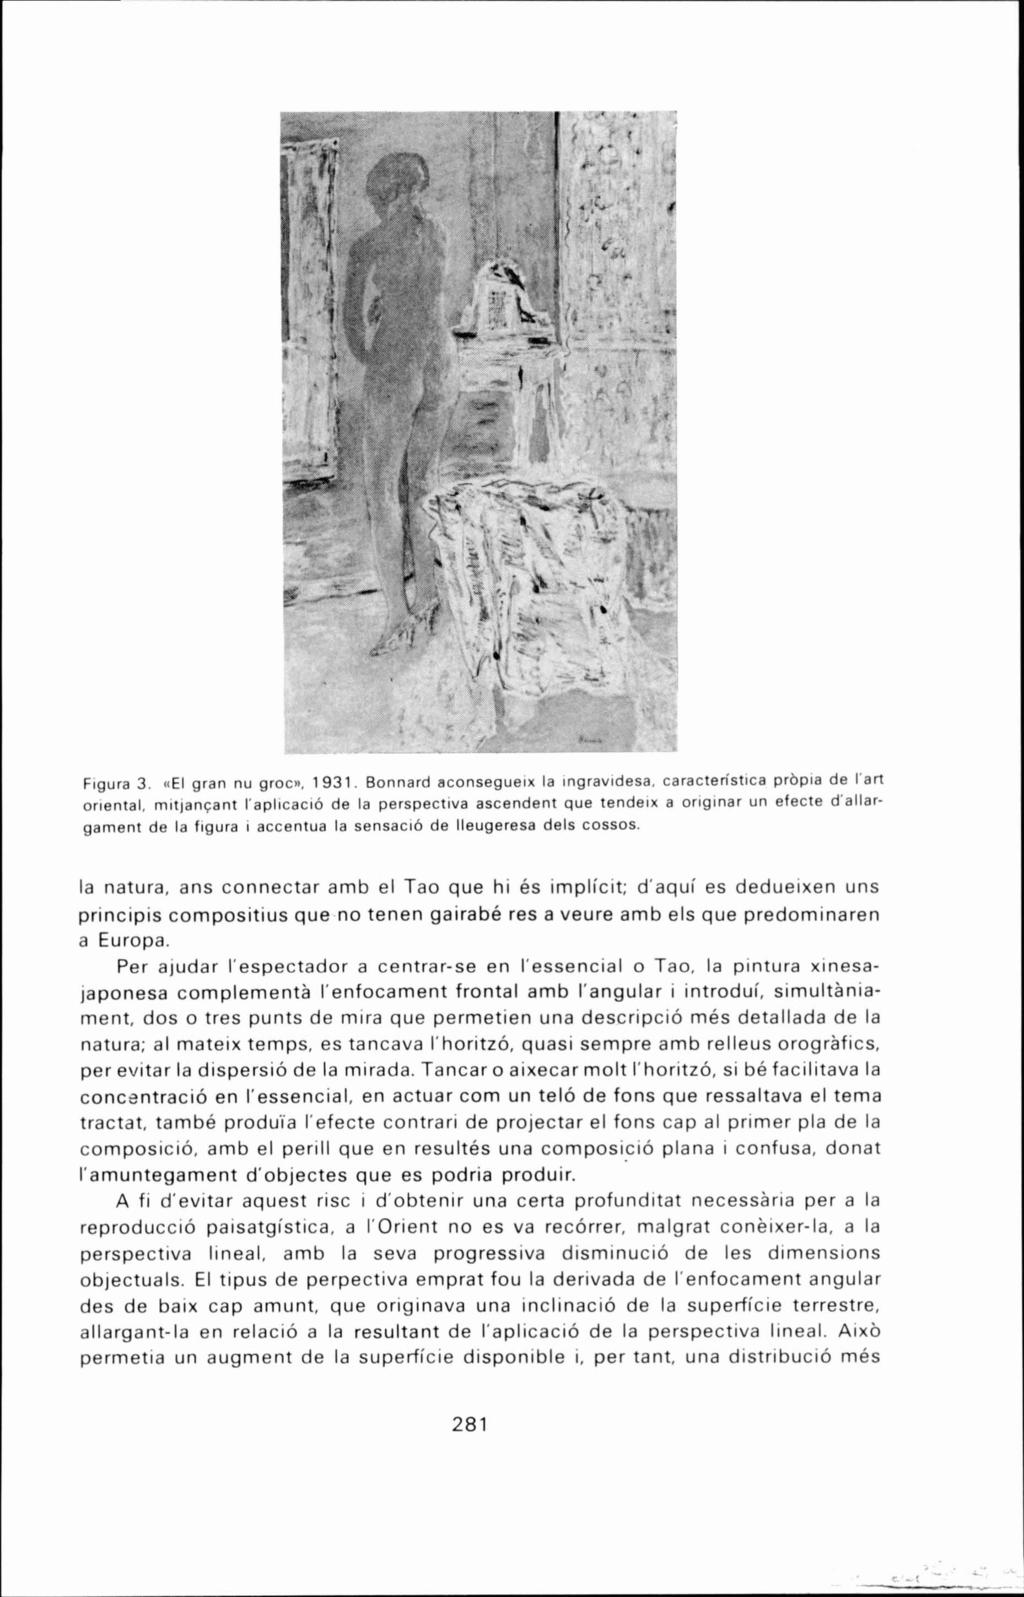 Figura 3. <(El gran nu groc)), 1931. Bonnard aconsegueix la ingravidesa. caractenstica prbpia de I'art oriental.